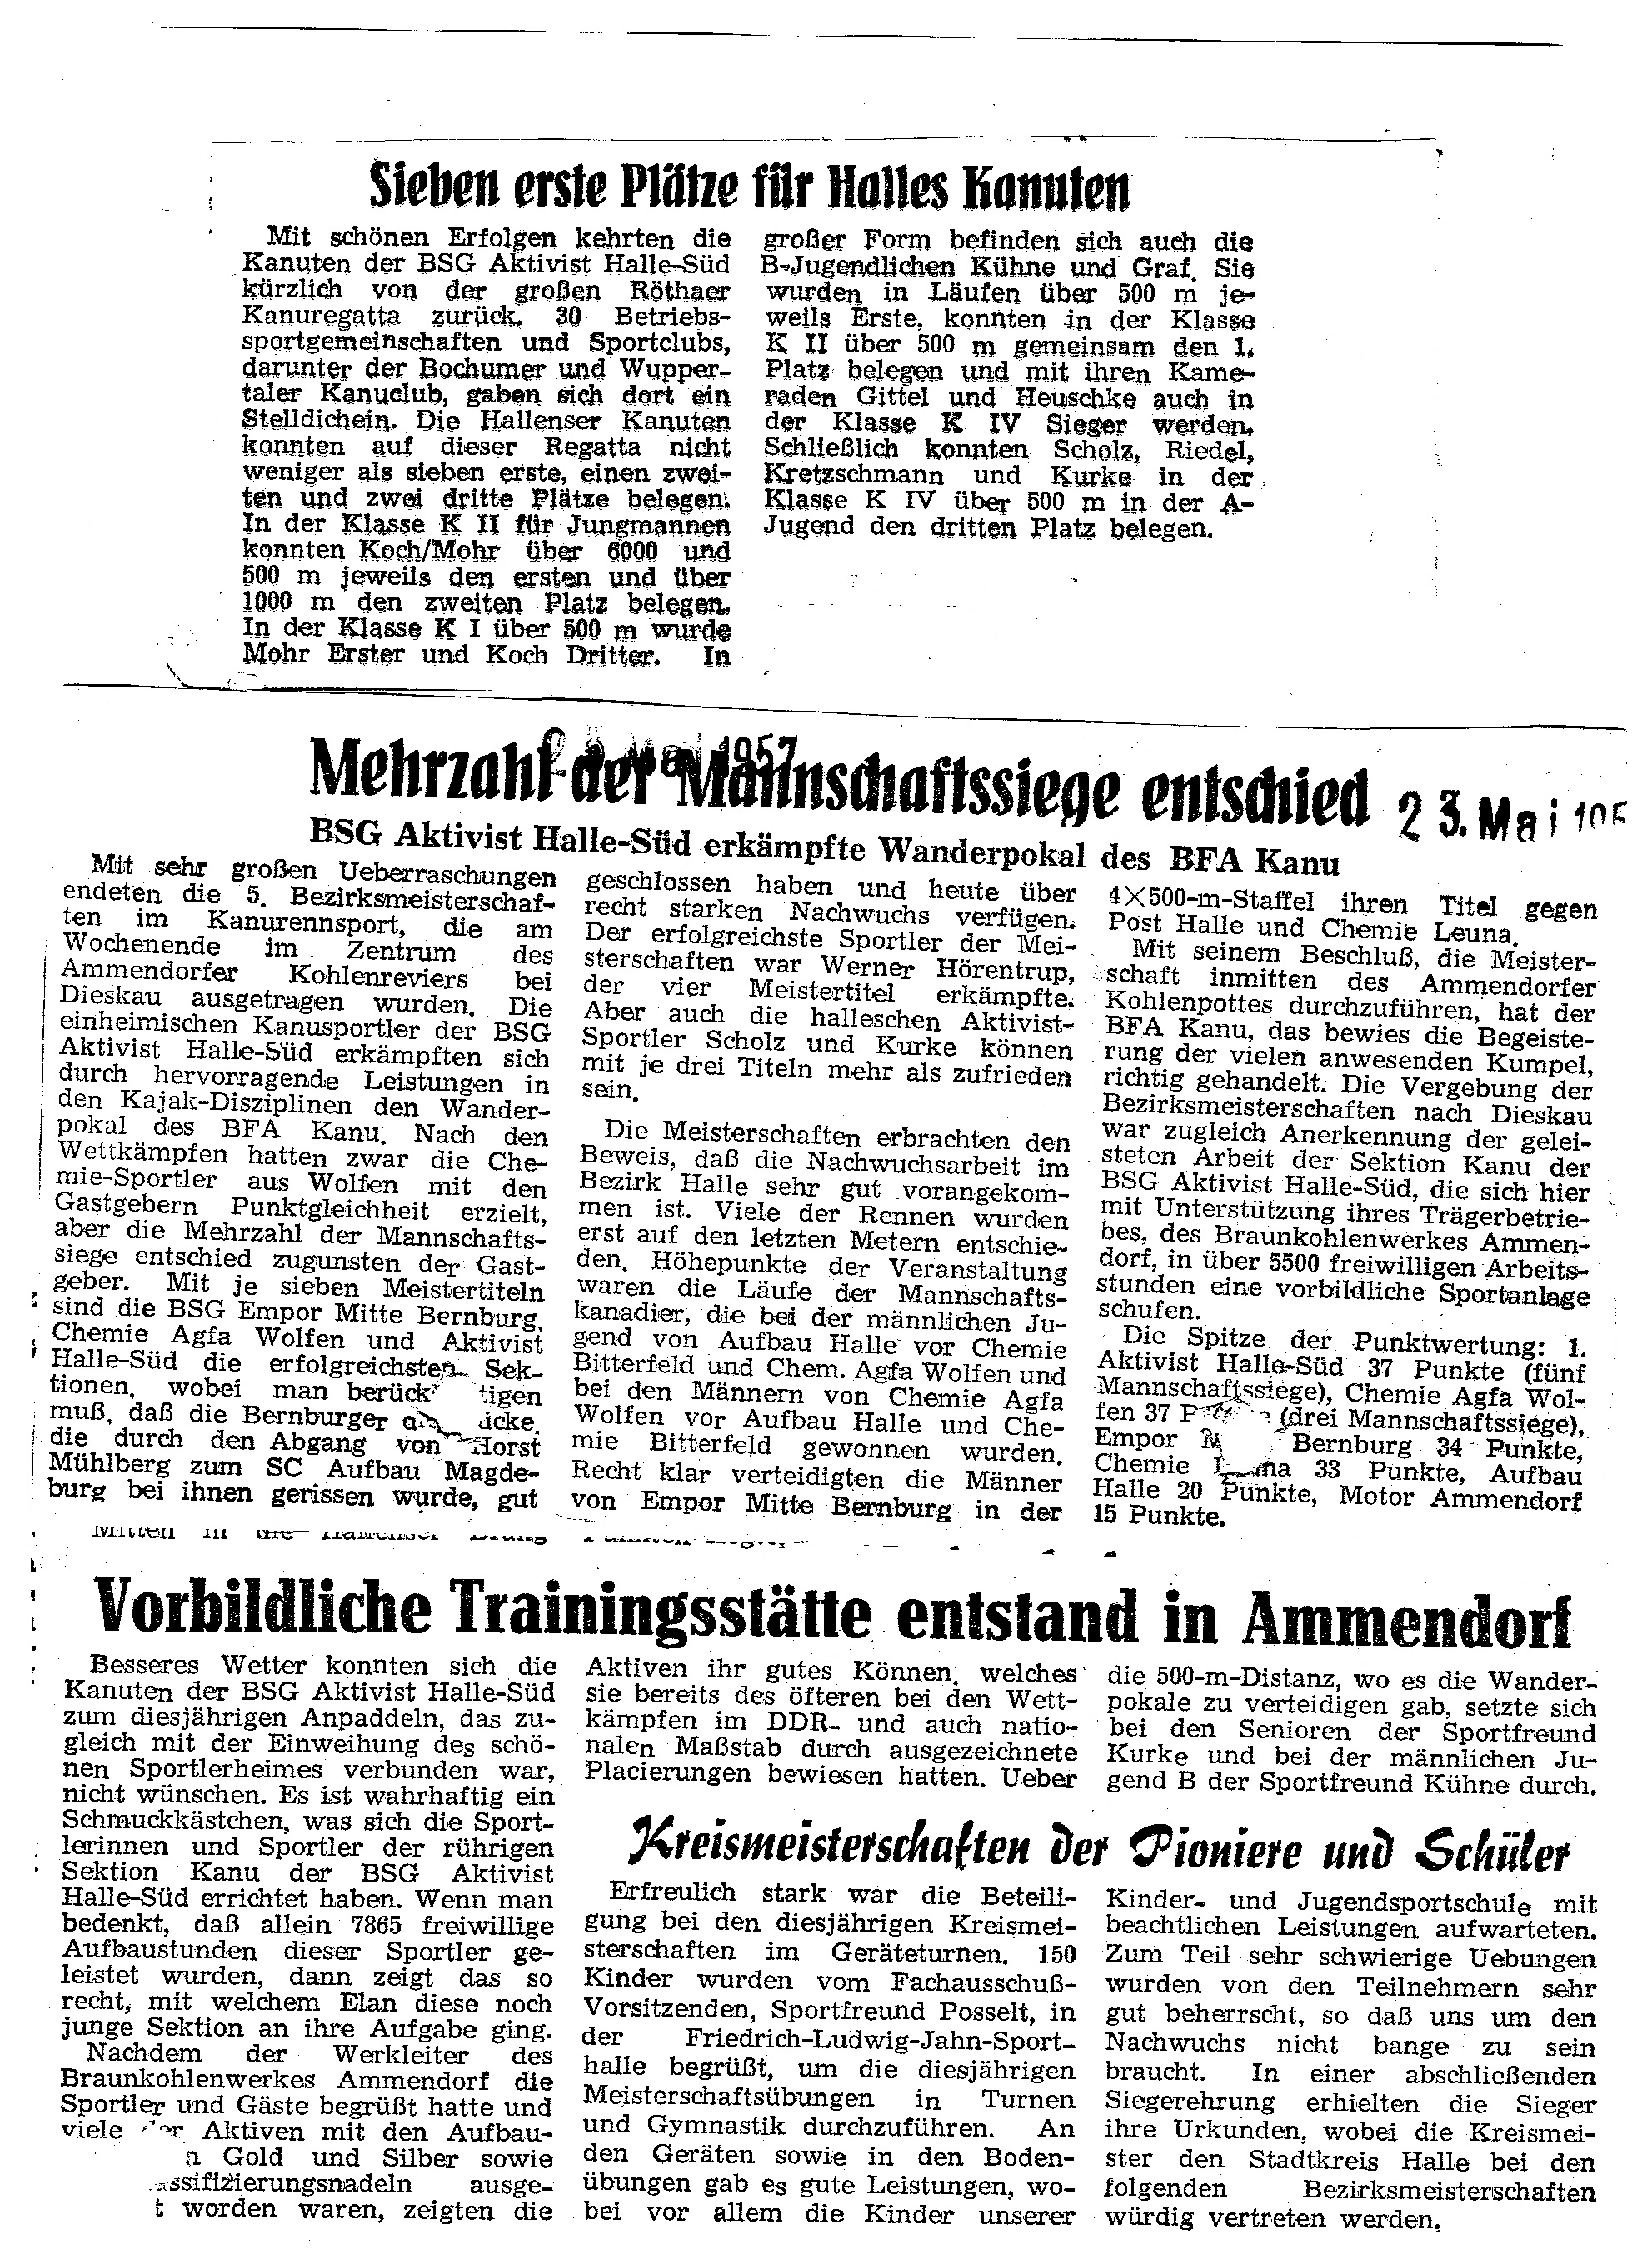 1957-05-23 Mehrzahl Mannschaftssiege entschied, vorbildliche Trainingsstätte entstand in ammendorf